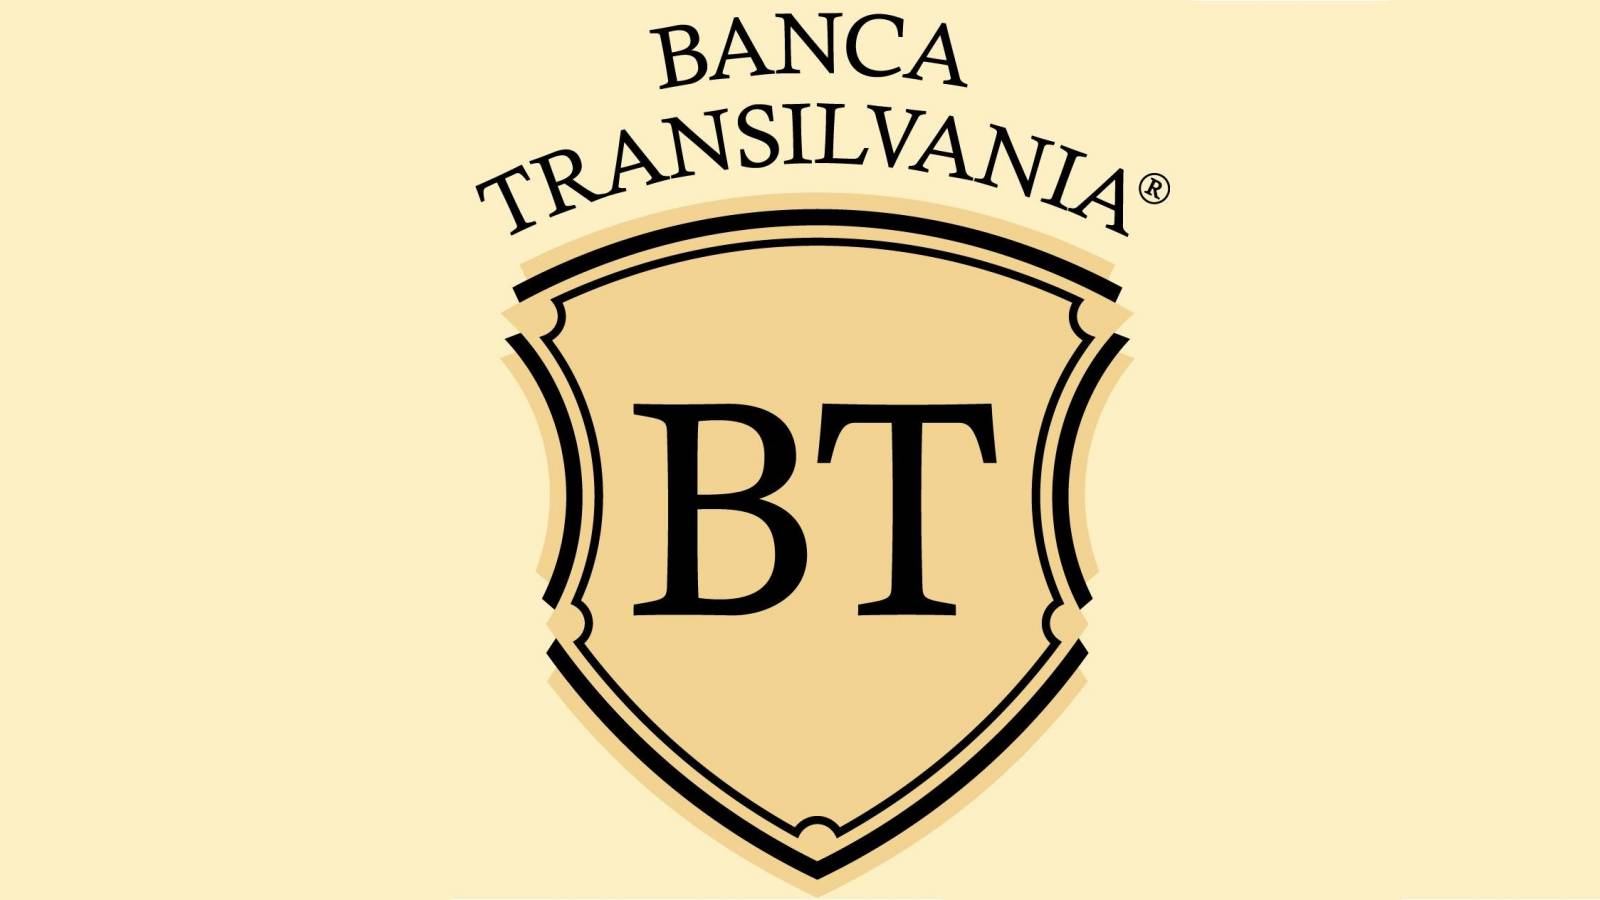 BANCA Transilvania Notificare ATENTIONARE Clientii Romania